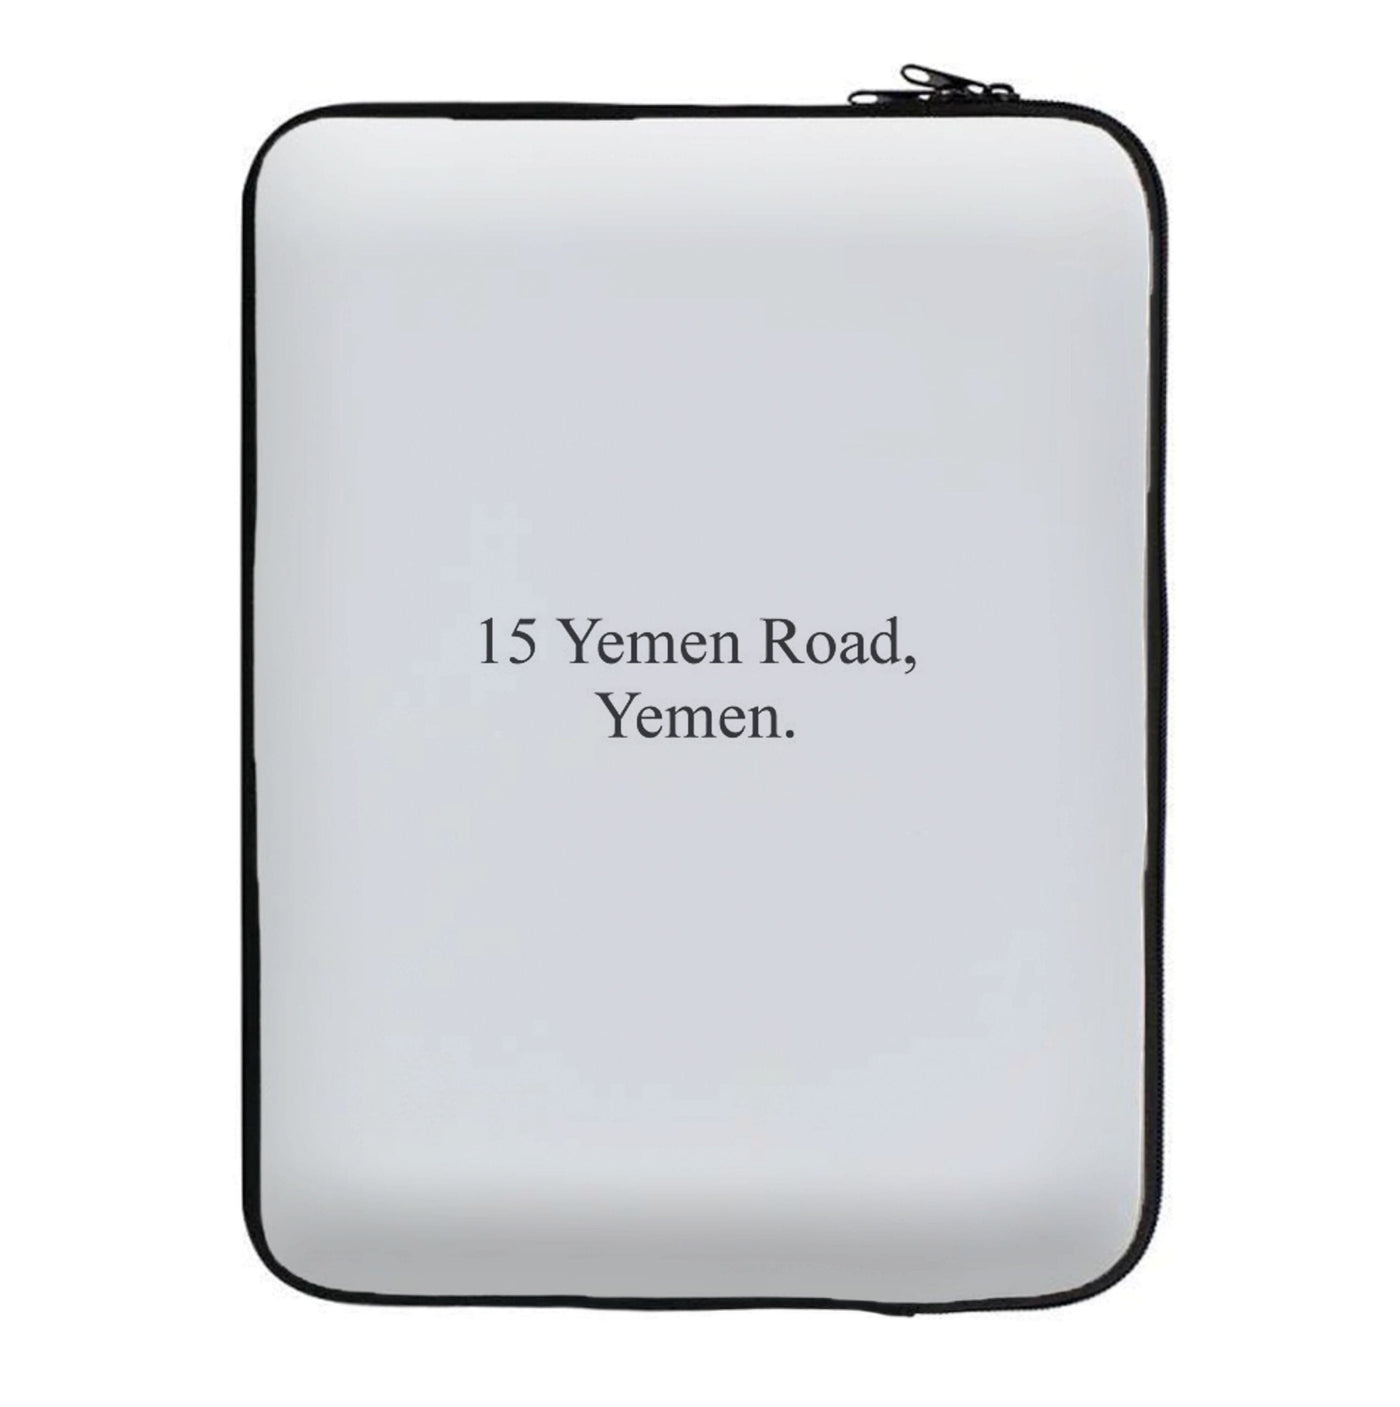 15 Yemen Road, Yemen - Friends Laptop Sleeve